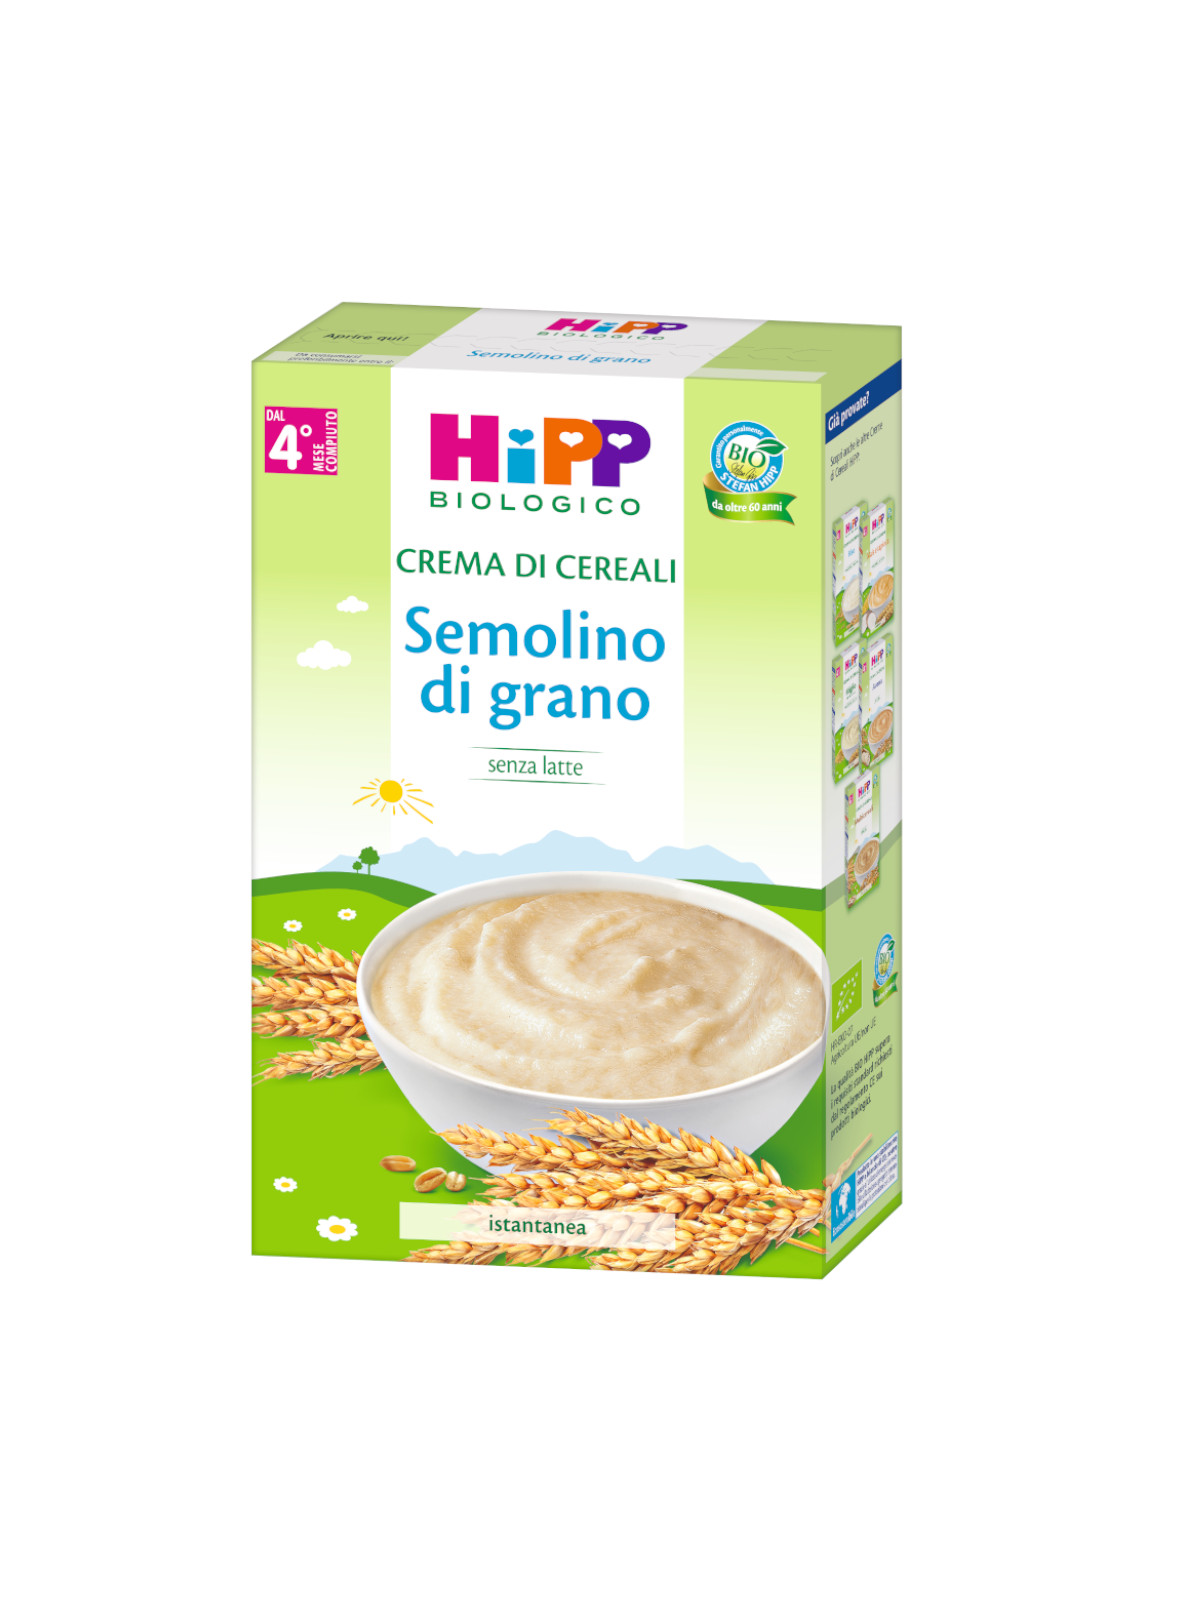 Crema di cereali semolino di grano 200g - Hipp